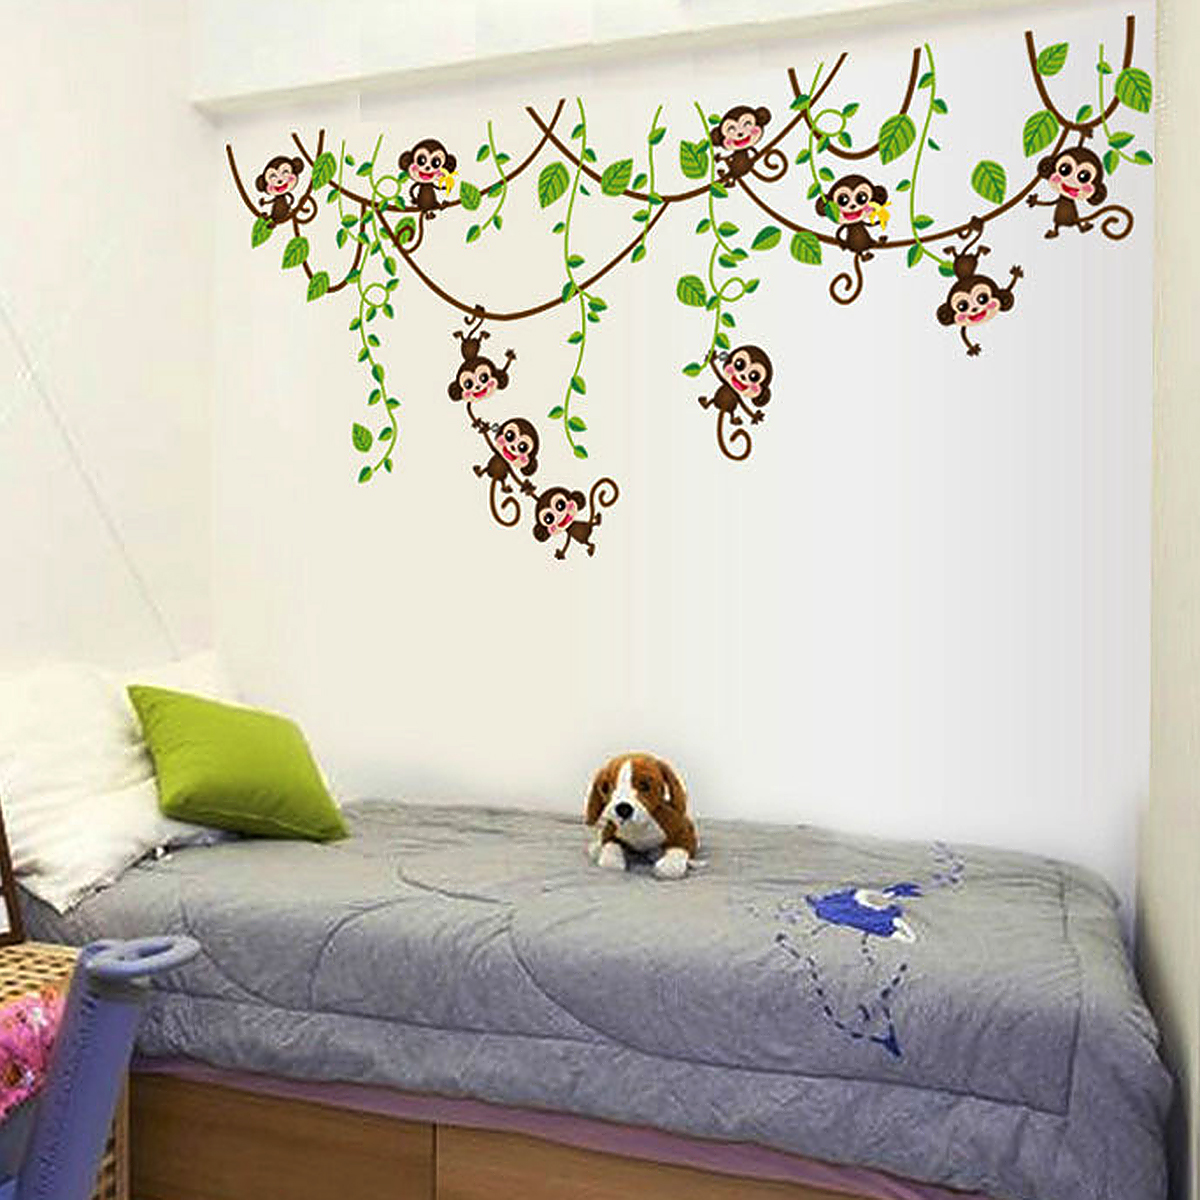 Monkey Climbing Tree Decal Wall Sticker Home Mural Decor Wallpaper